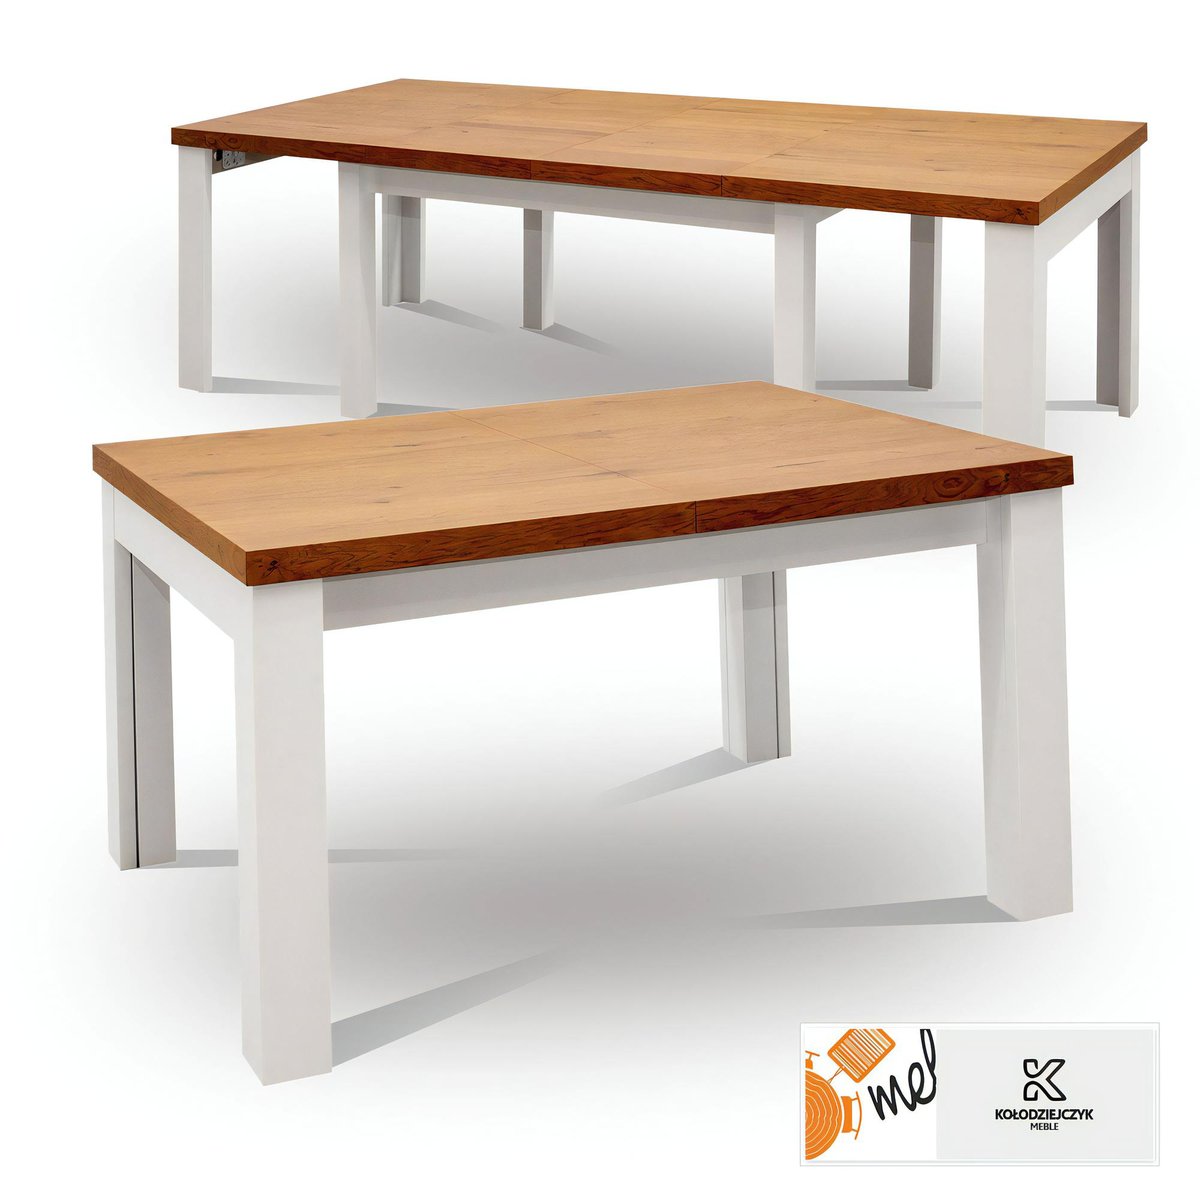 Drewniany stół rozkładany S25 dębowy z białymi nogami